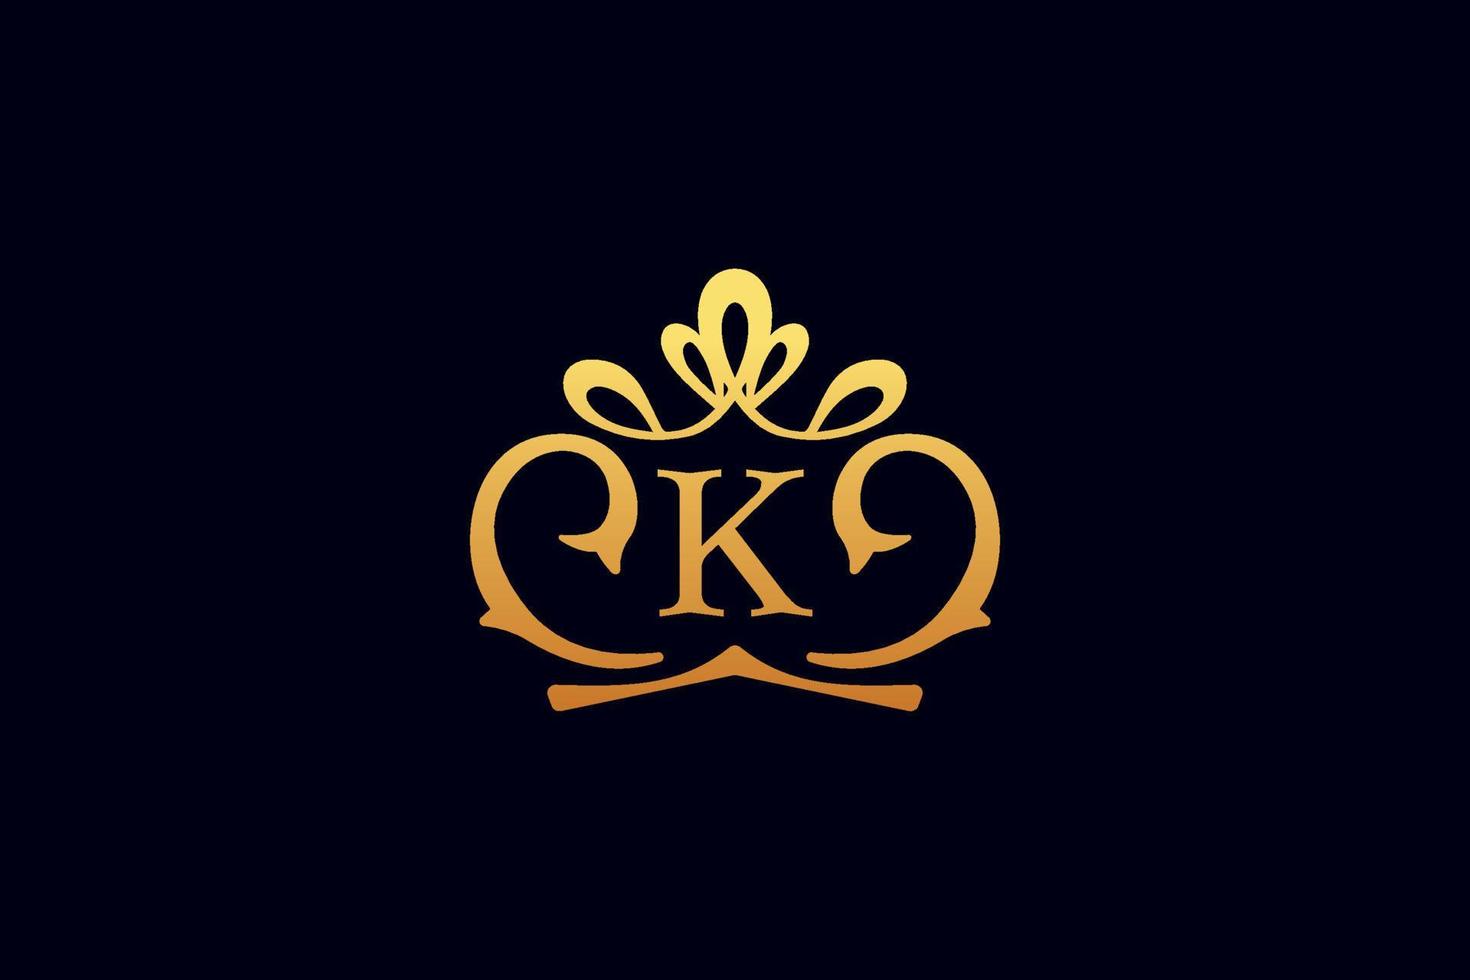 logotipo de lujo letras k oro con logotipo de corona vector